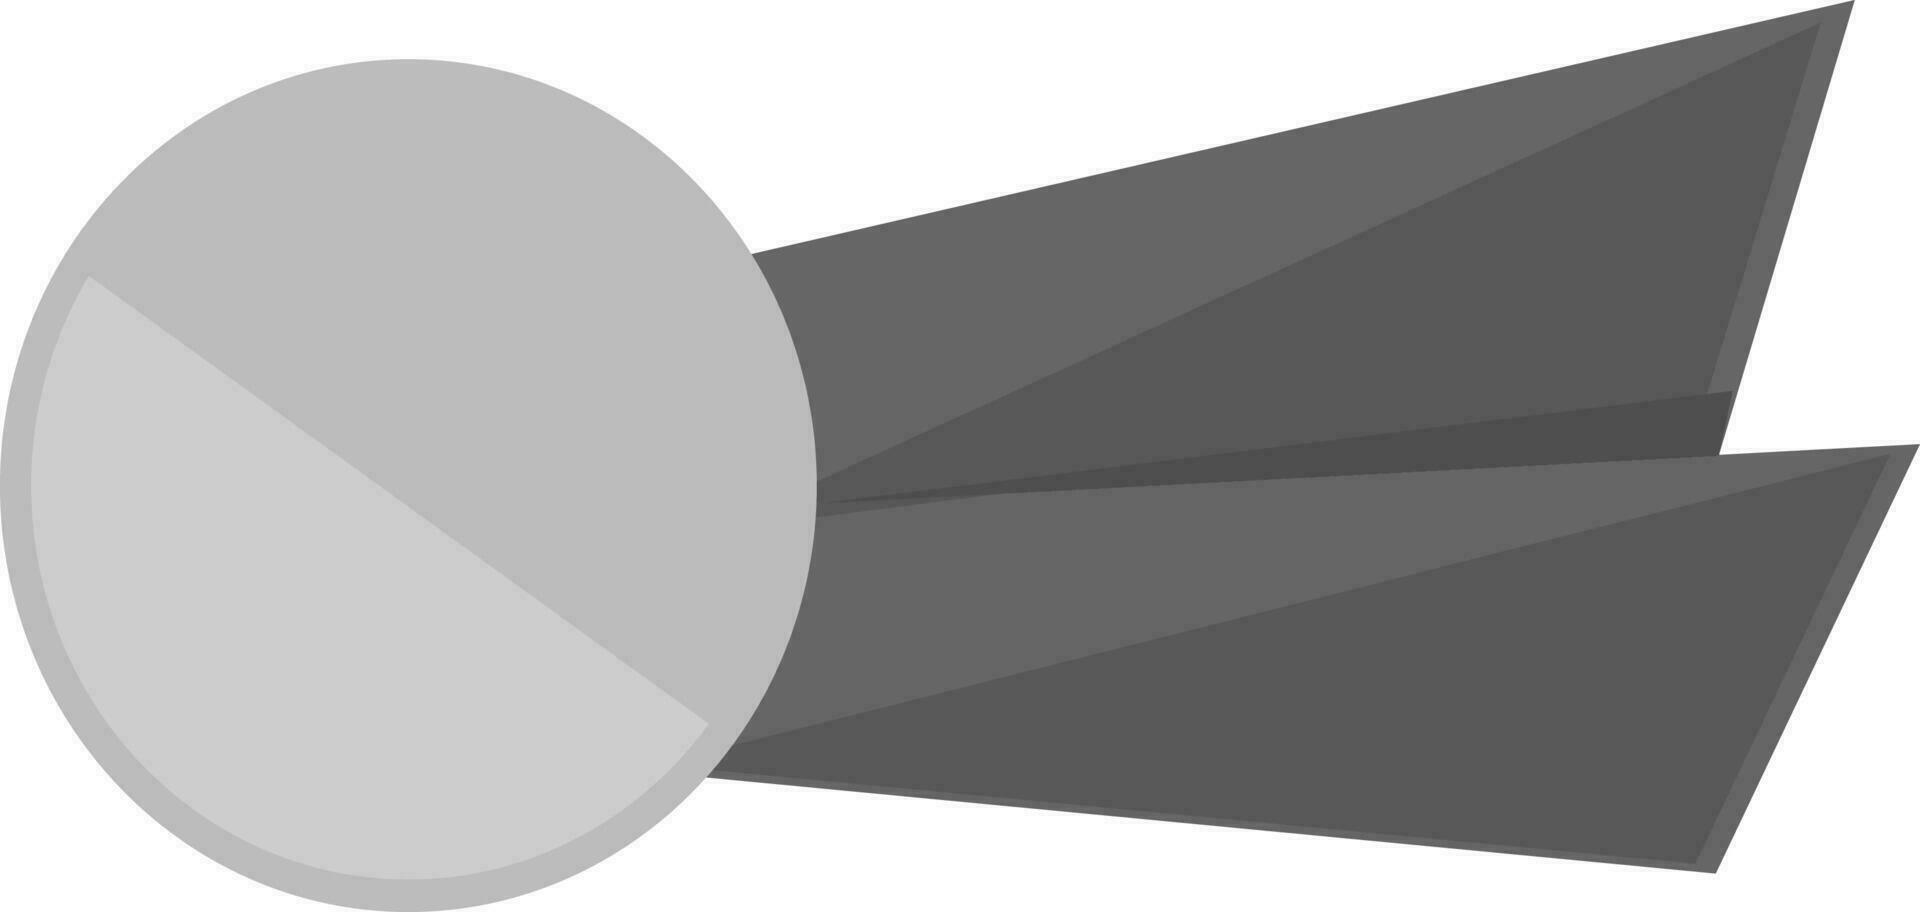 Black and gray blank badge or ribbon. vector